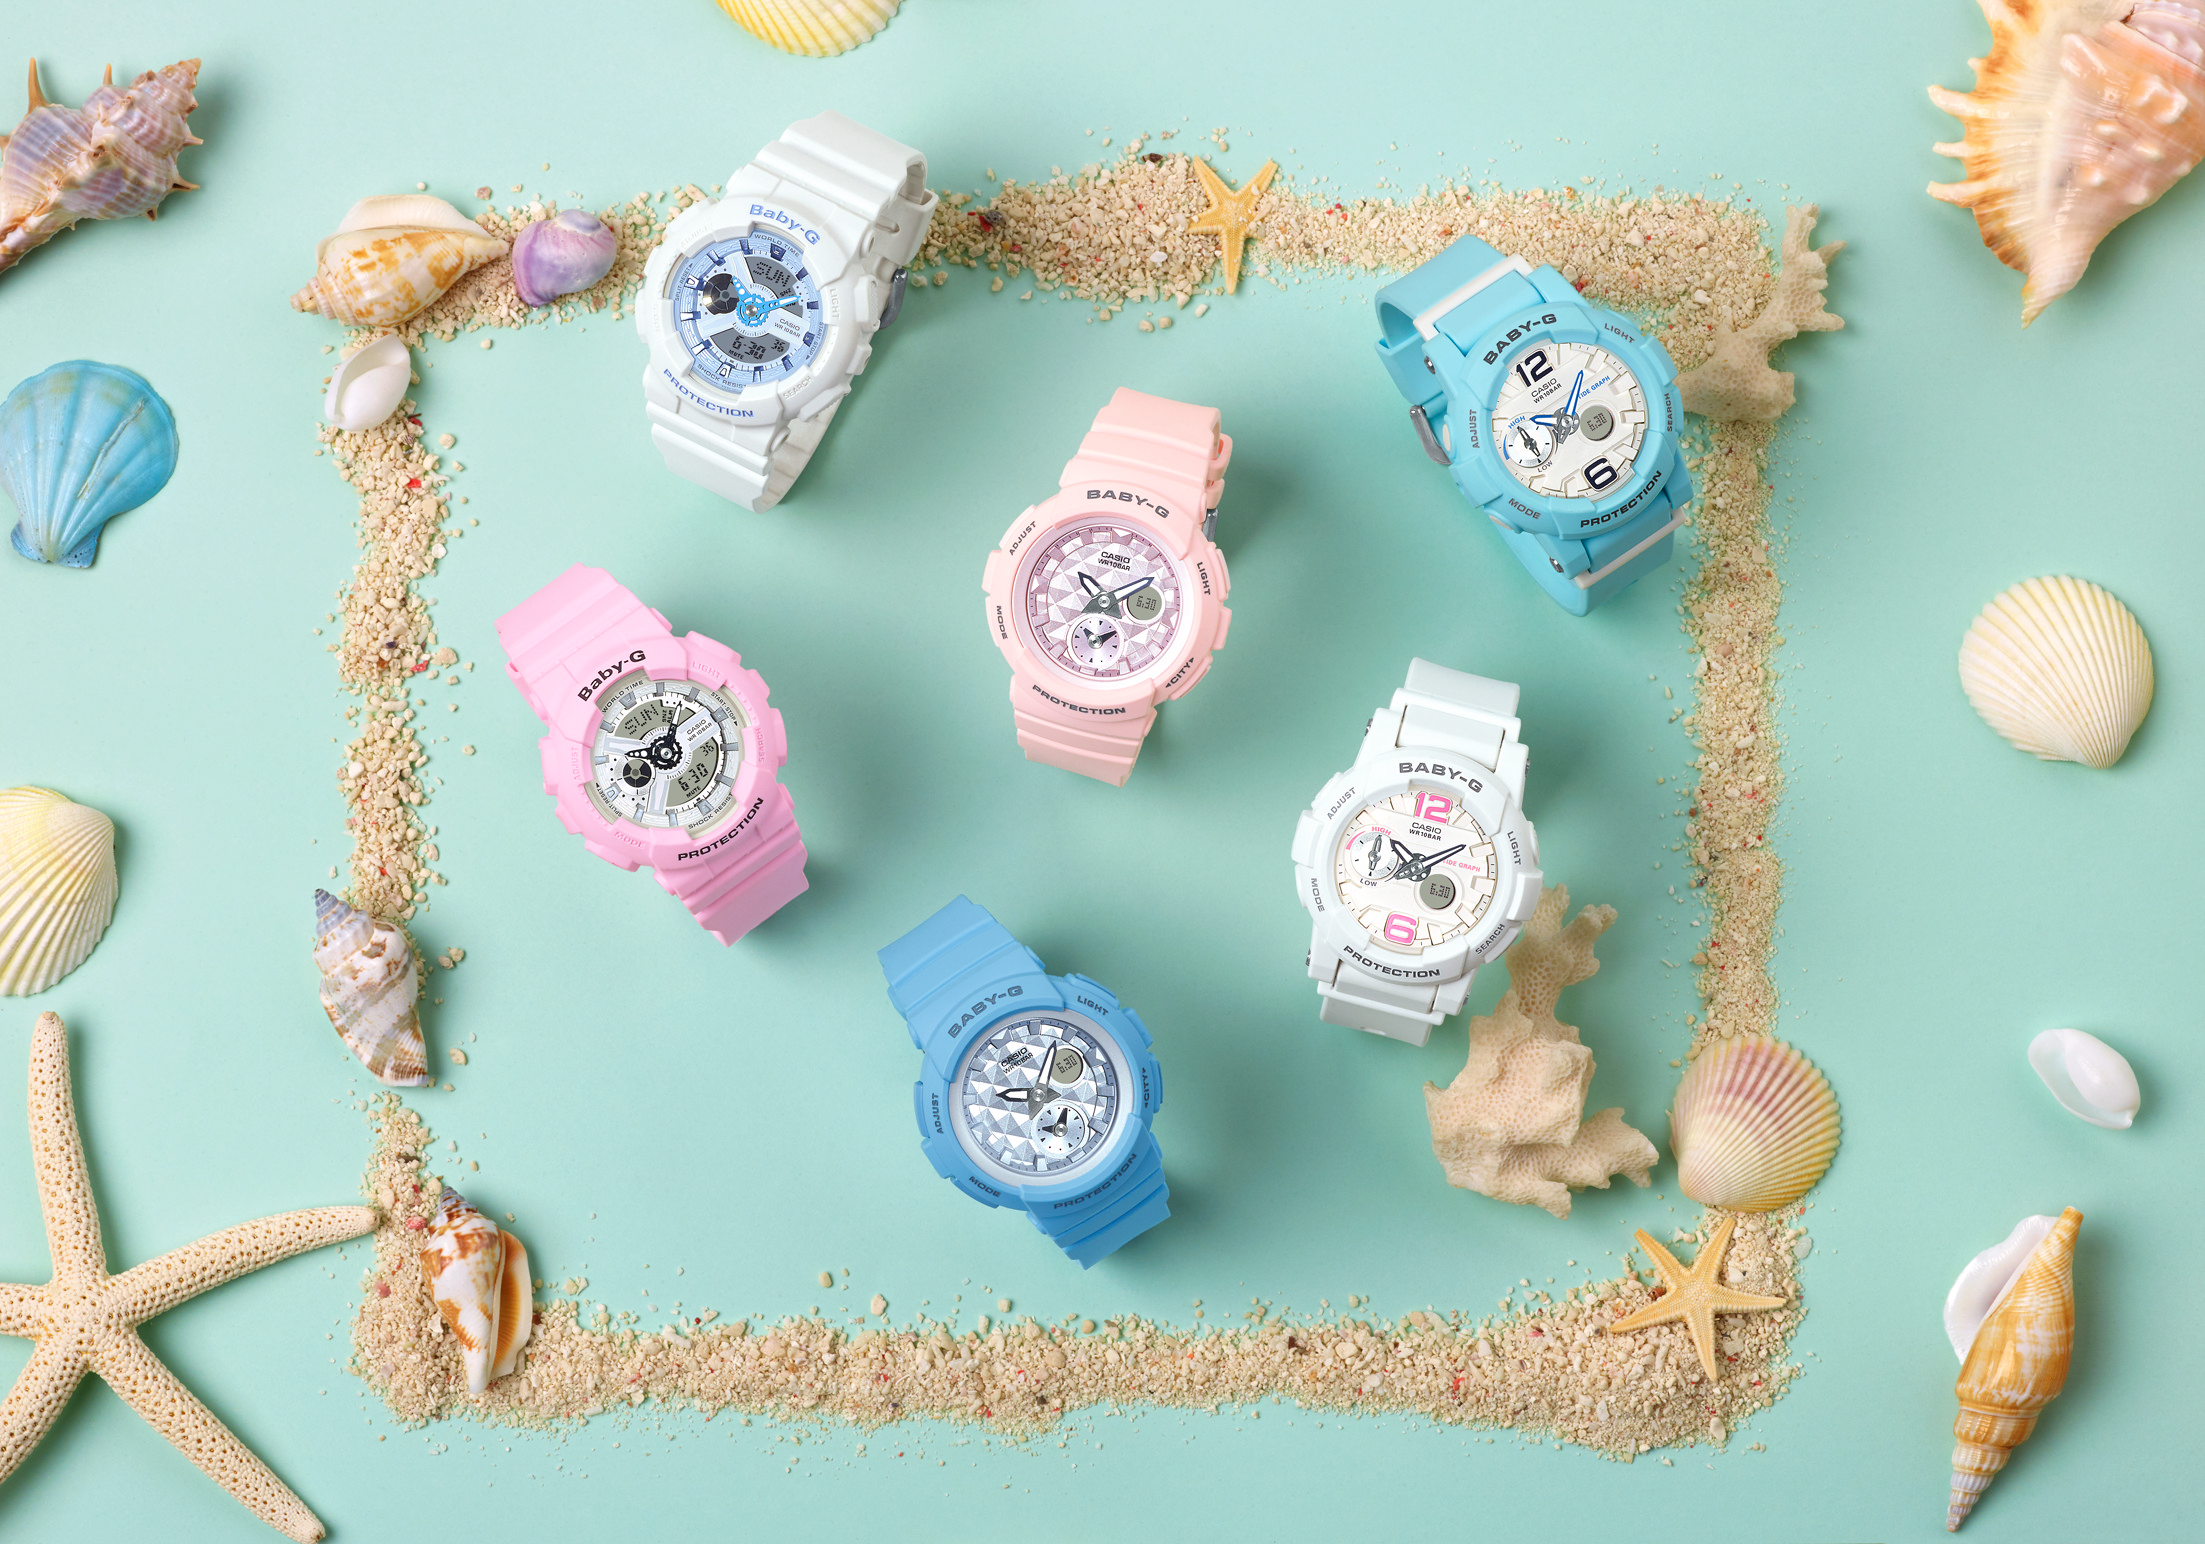 BABY-G Beach Colors Series全新系列 夢幻湖水藍與浪漫櫻花粉 完美打造夏季海洋風格